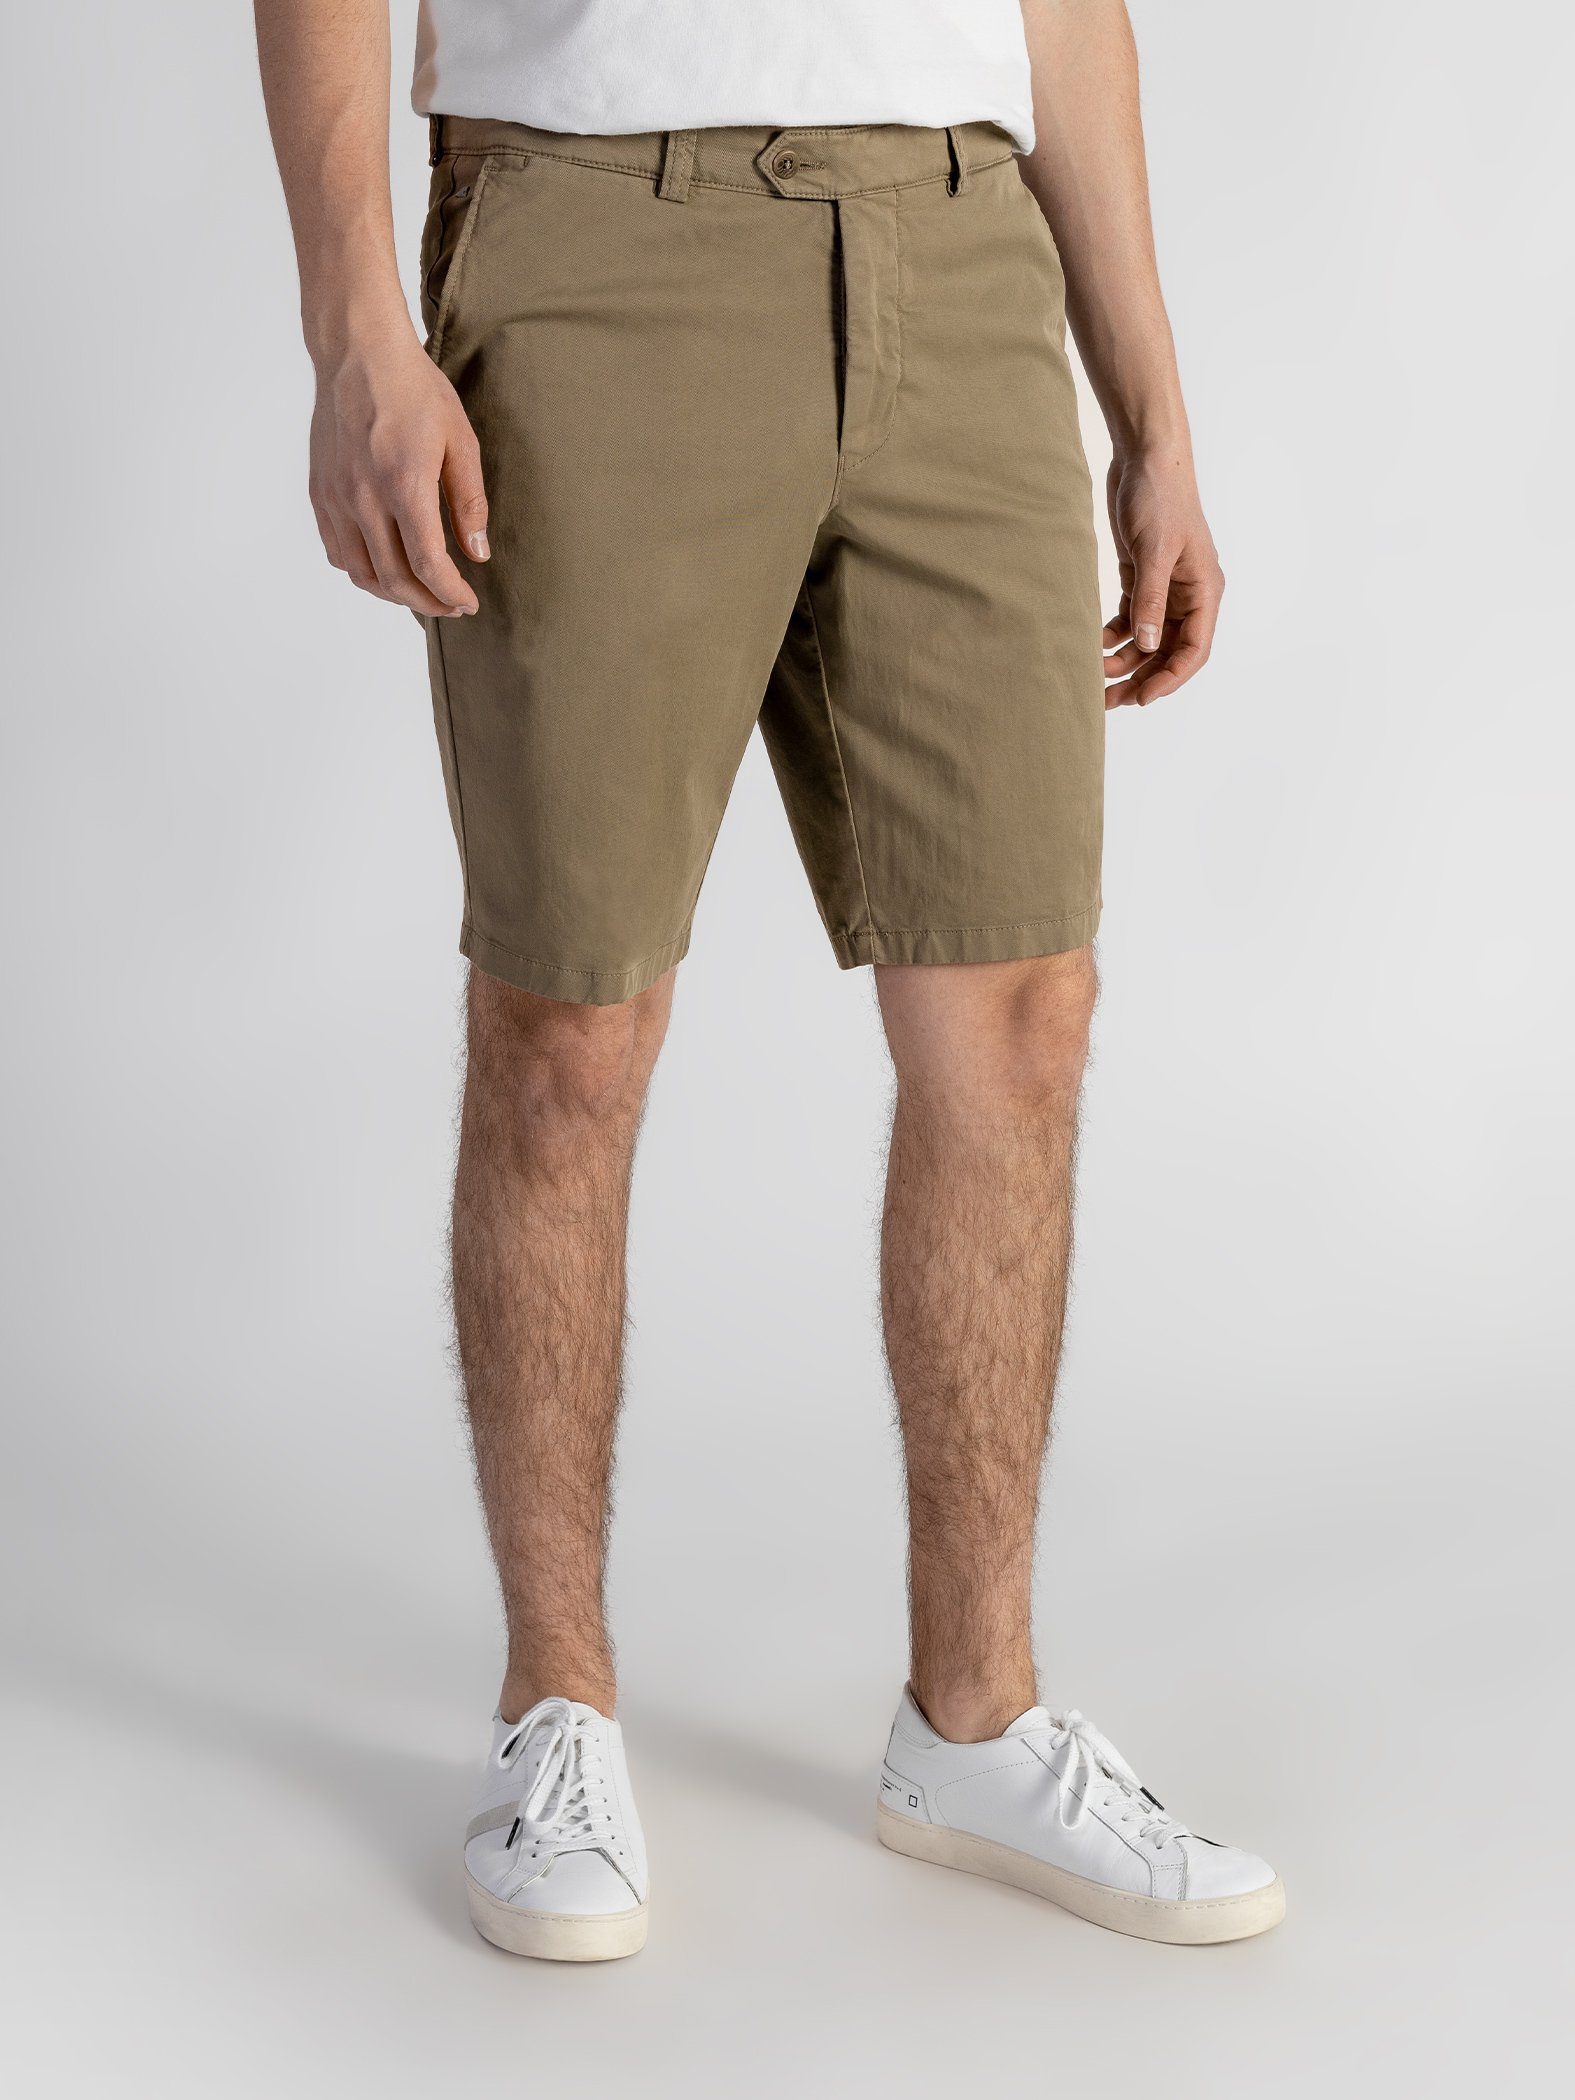 GOTS-zertifiziert Bund, Farbauswahl, Shorts Beige mit Shorts TwoMates elastischem